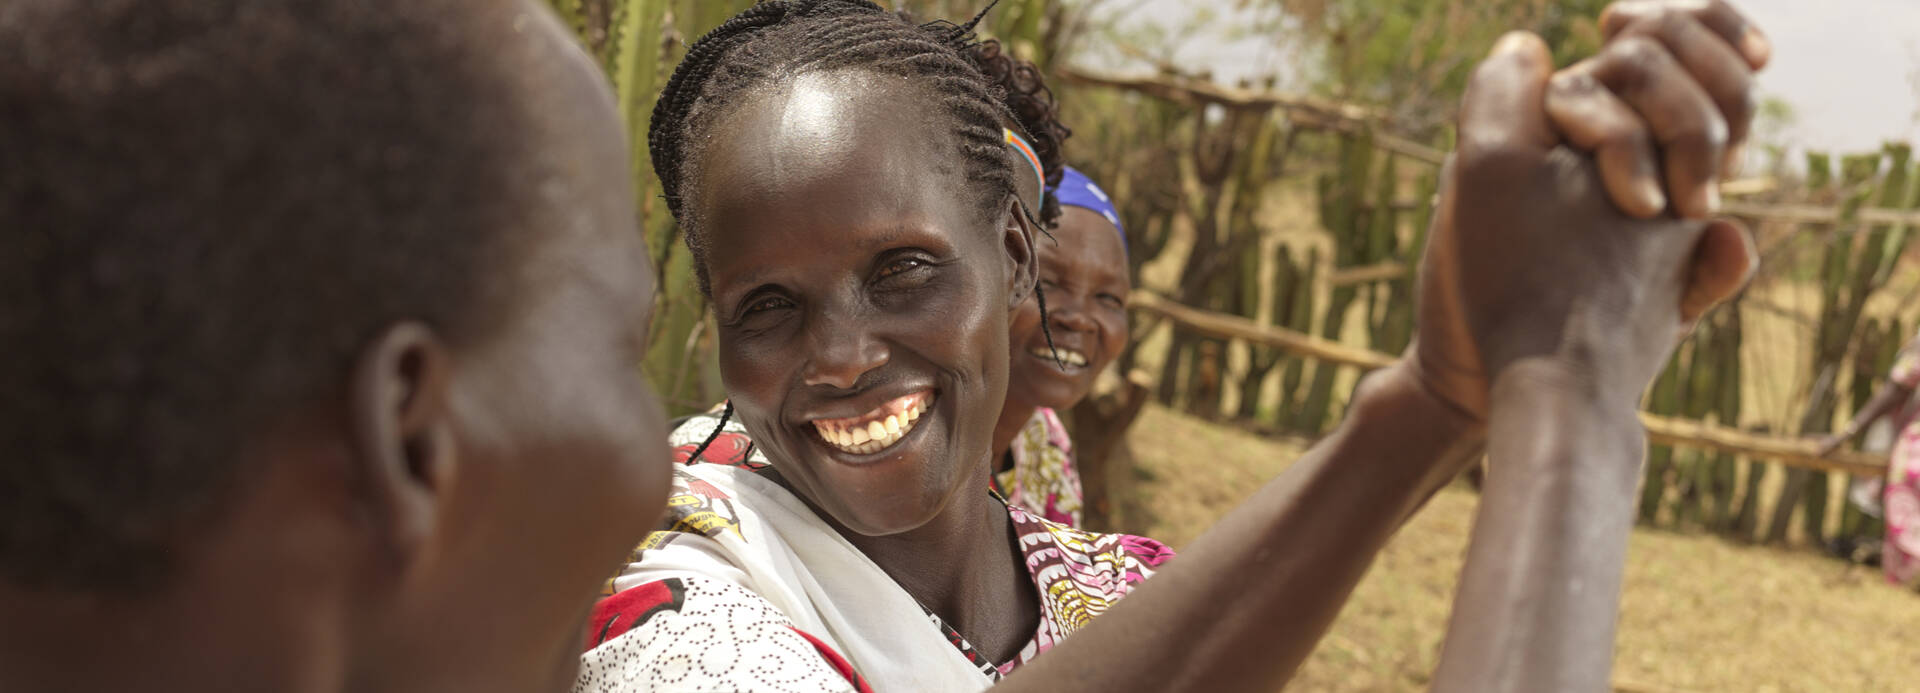 Frauen aus Kenia schlagen freudig ein, eine strahlt dabei in die Kamera.